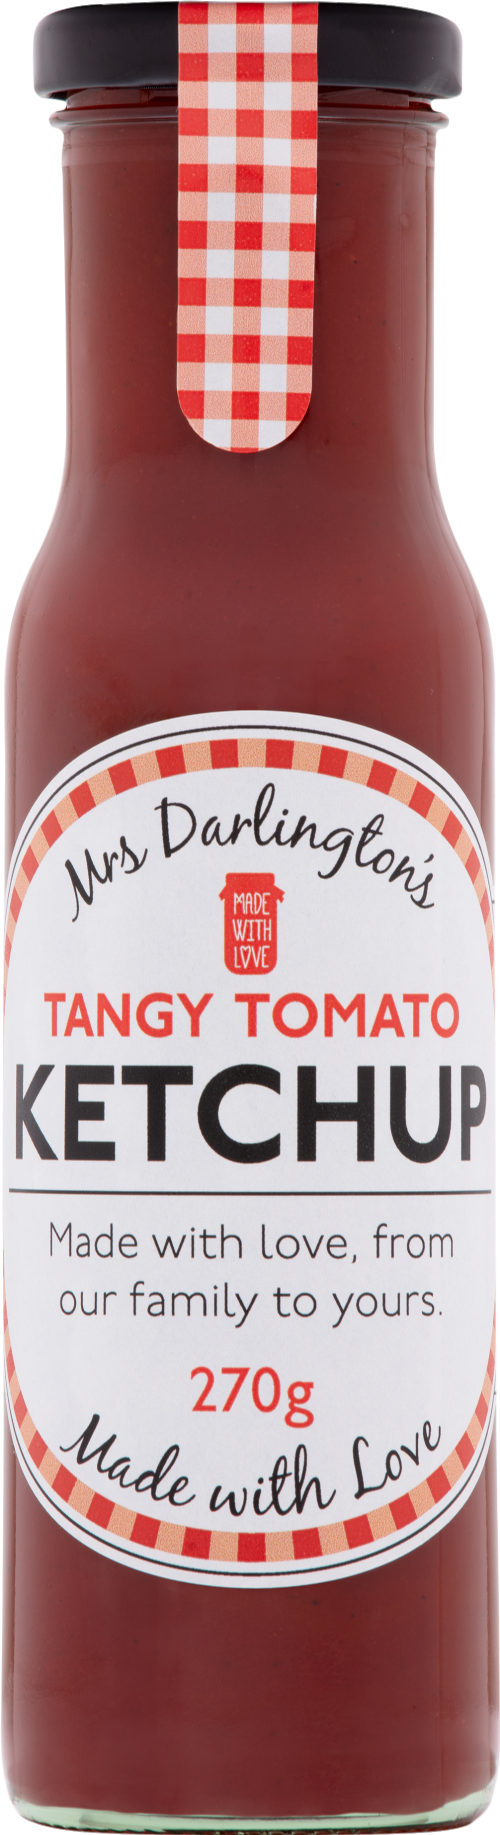 DARLINGTON'S Tangy Tomato Ketchup 270g